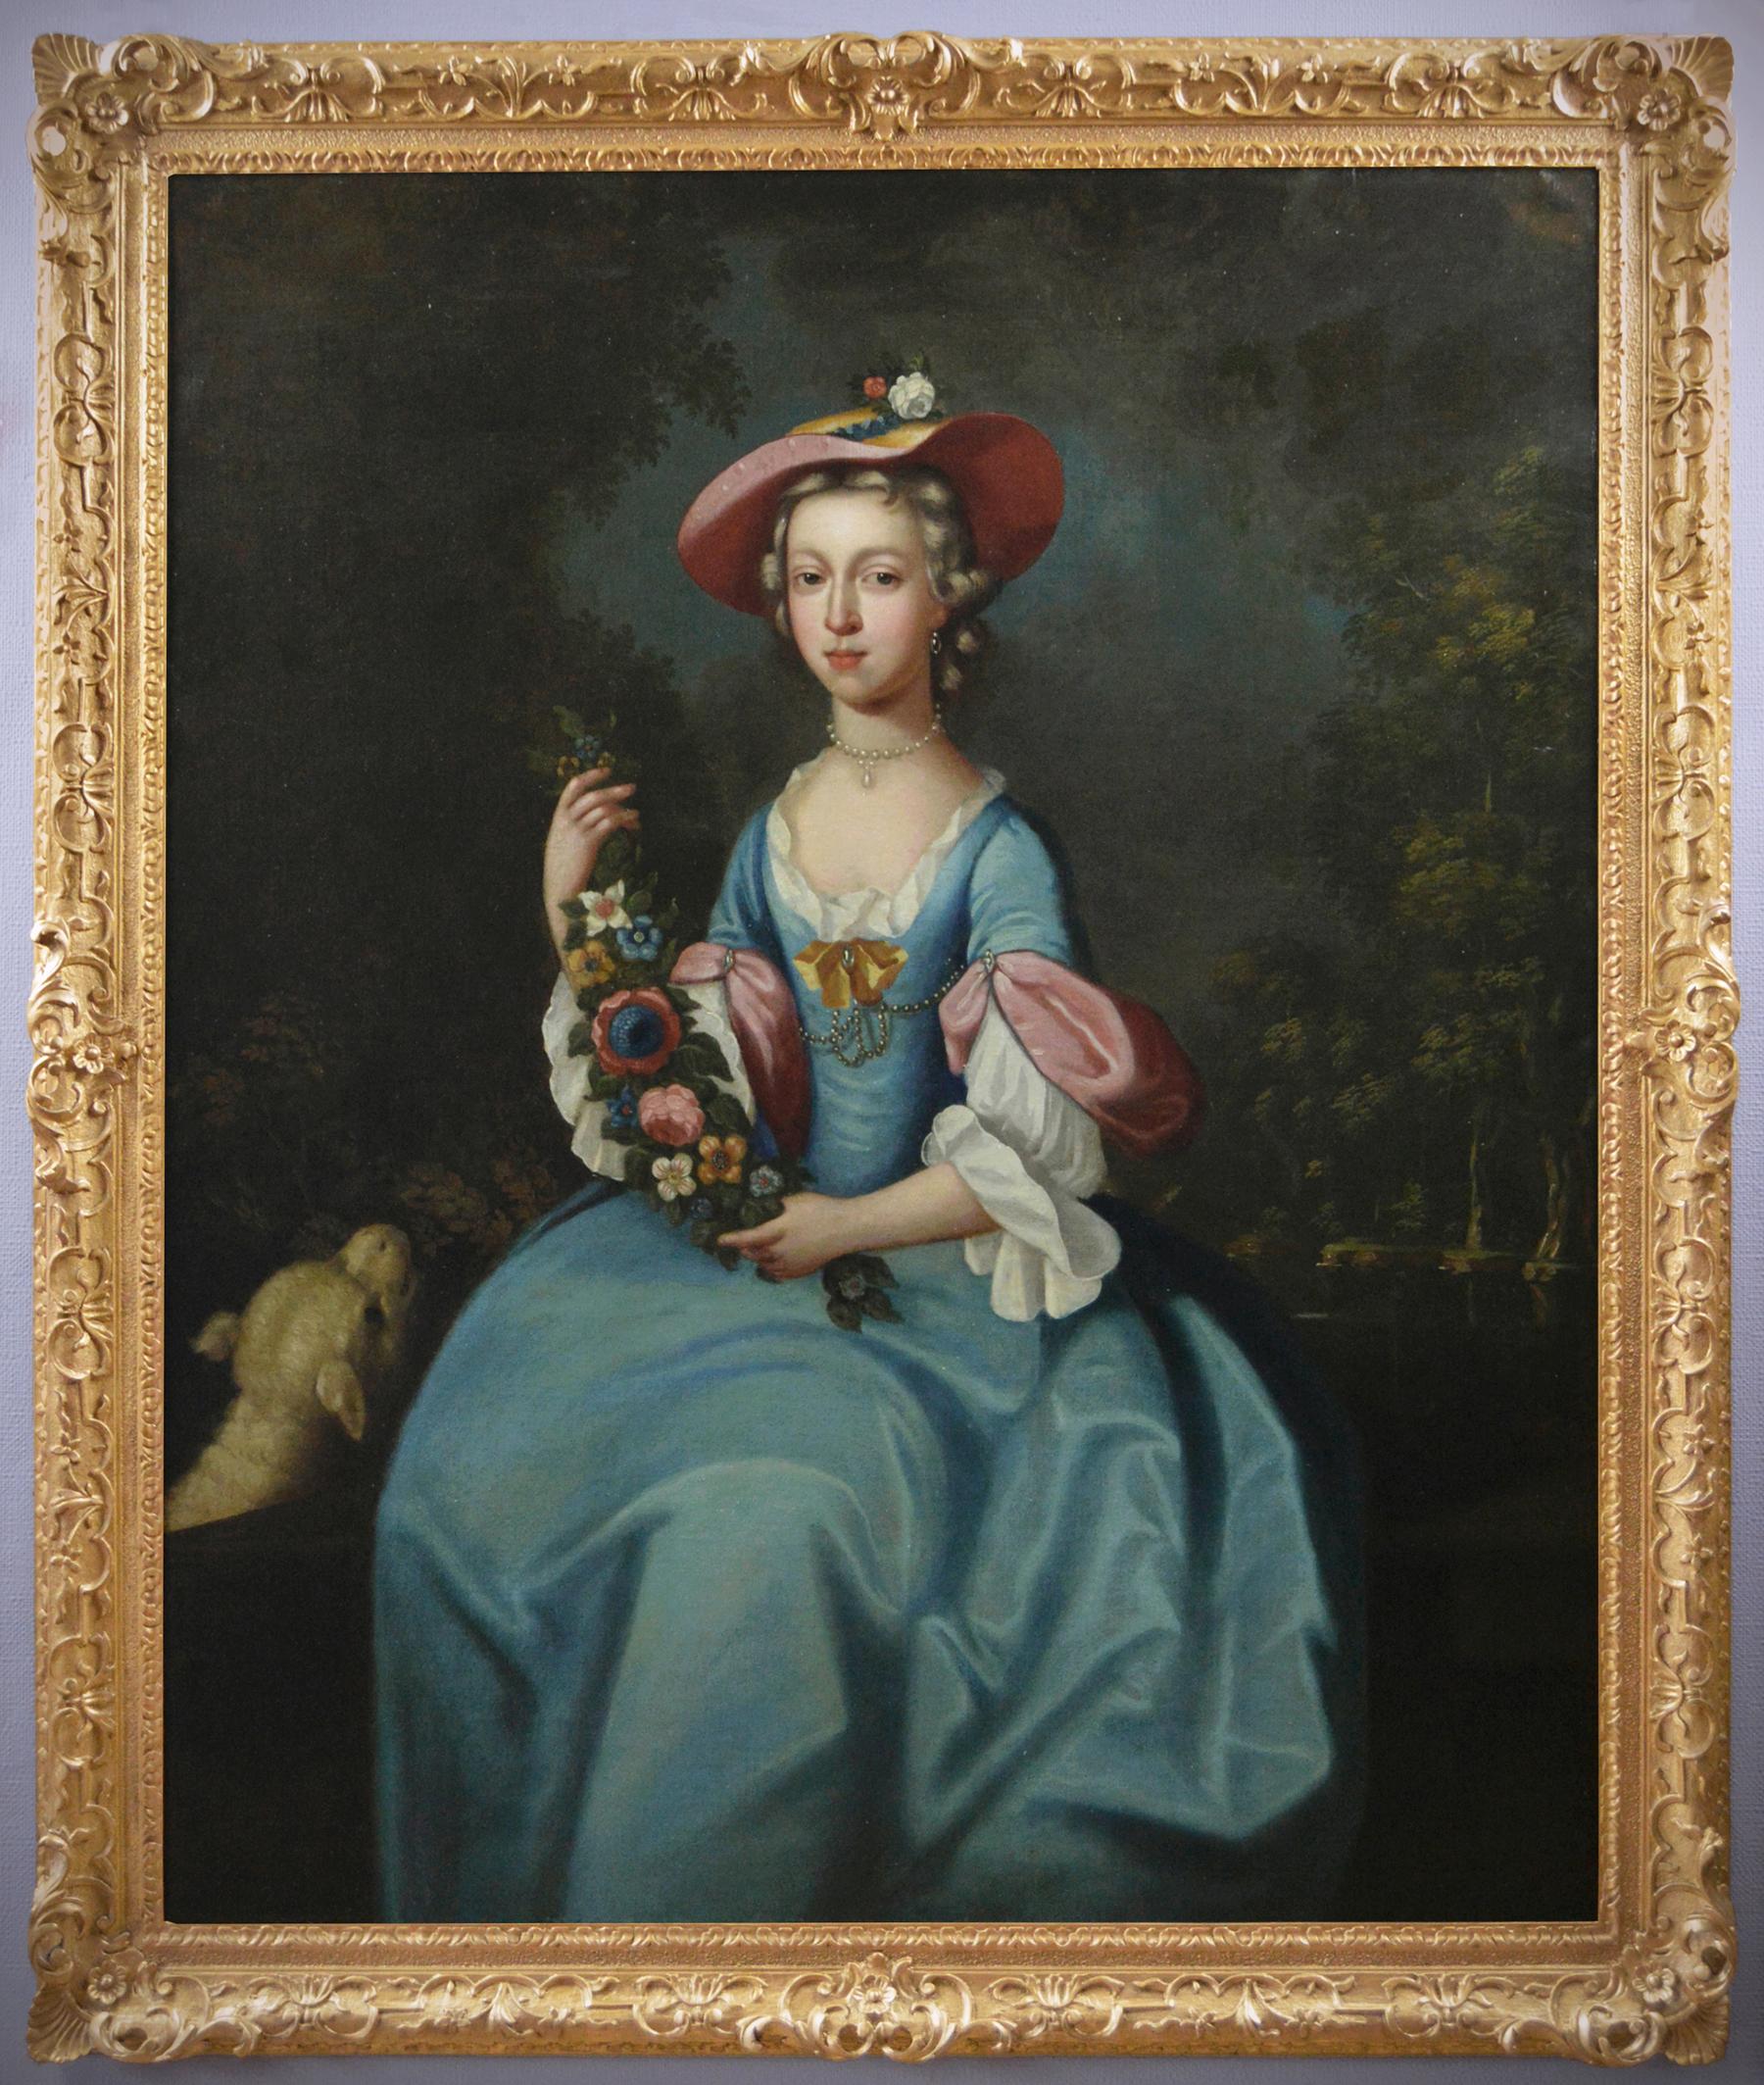 Portrait Painting Arthur Pond - Portrait à grande échelle du 18e siècle représentant une dame avec un agneau